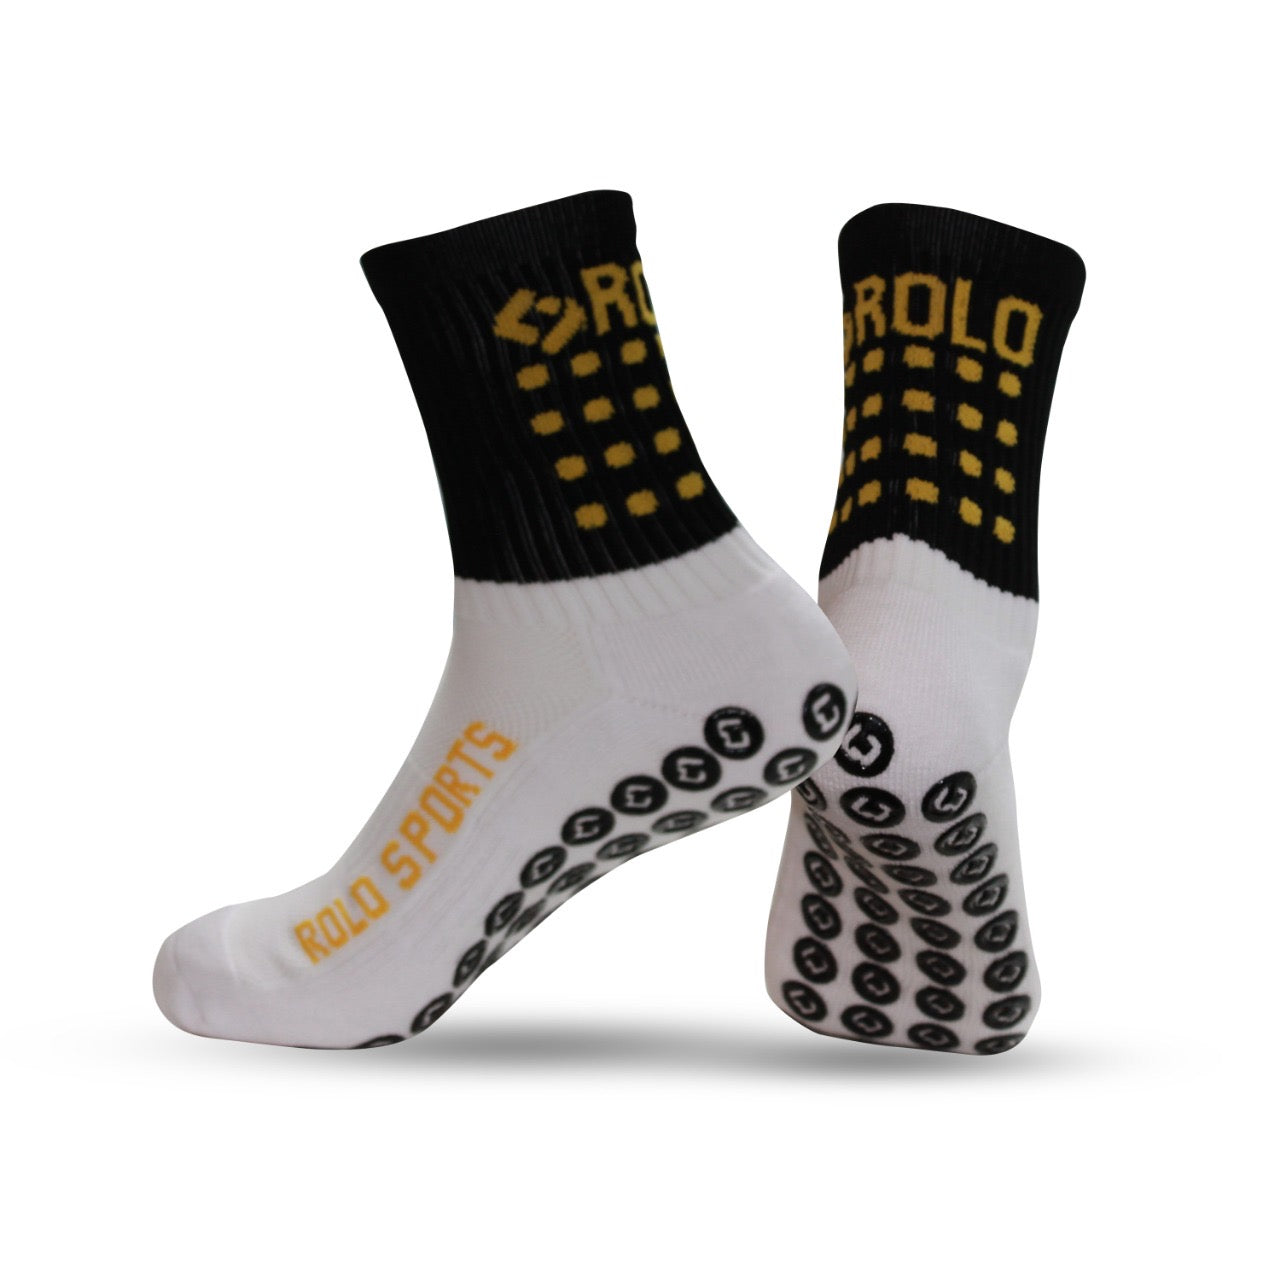 SENDA Gravity Performance Grip Socks with Non-Slip Technology, Soccer, Running, Basketball, Crew Length, Yellow White, Large (US Men 8-12, Women 9-13)